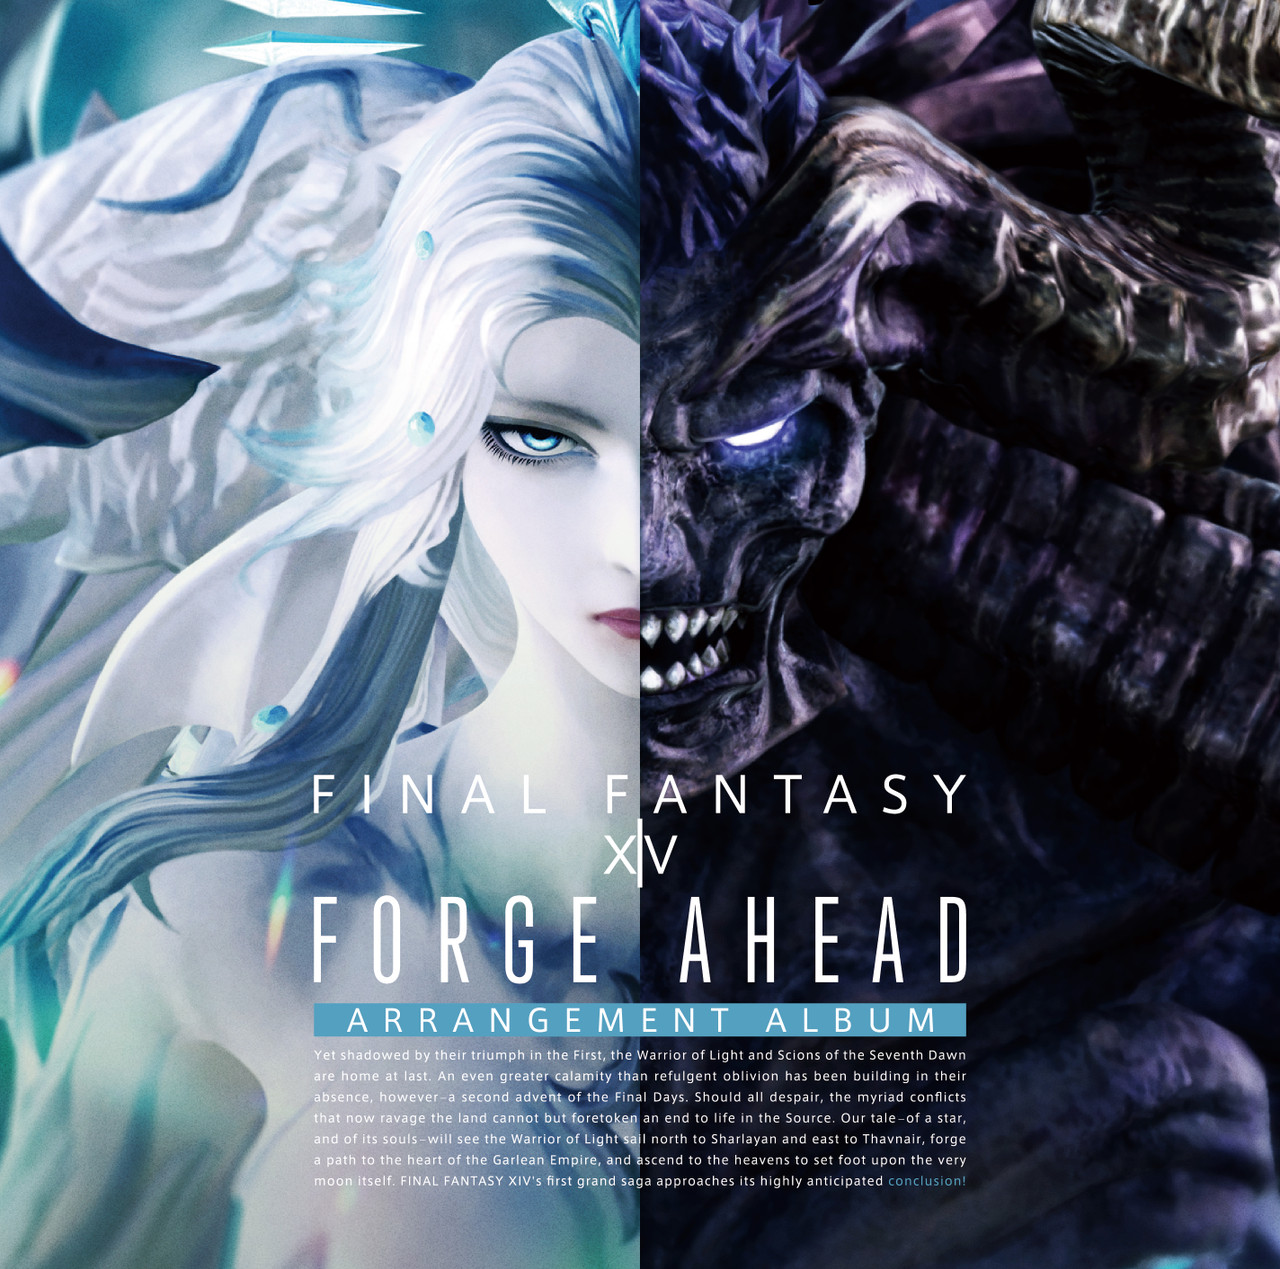 Final Fantasy XIV and future Square Enix games will come to Xbox